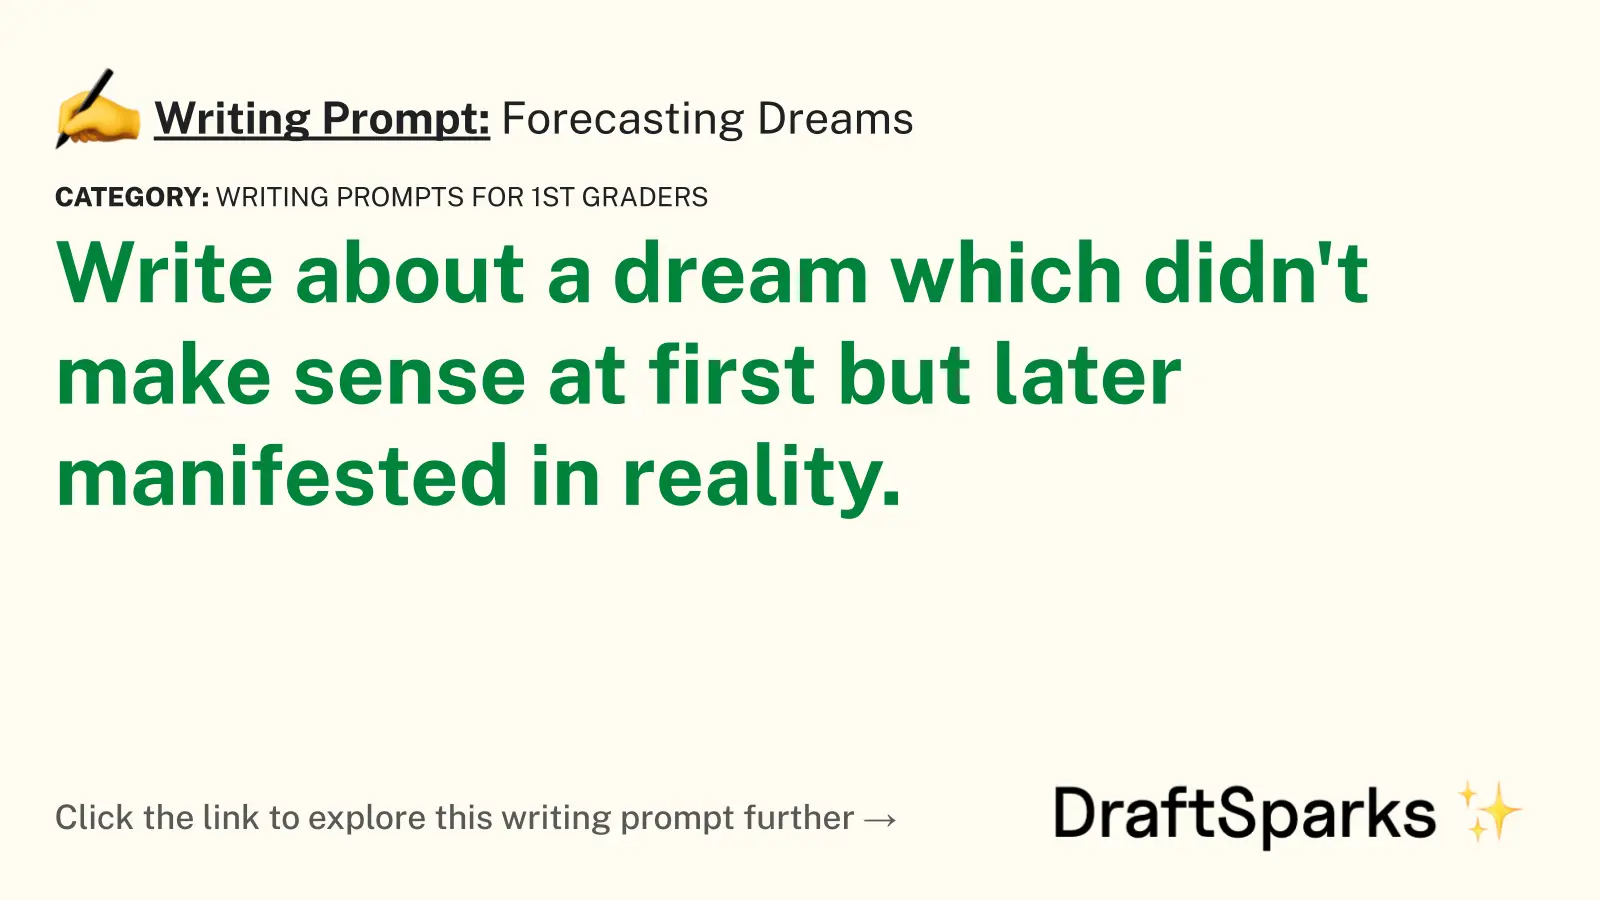 Forecasting Dreams